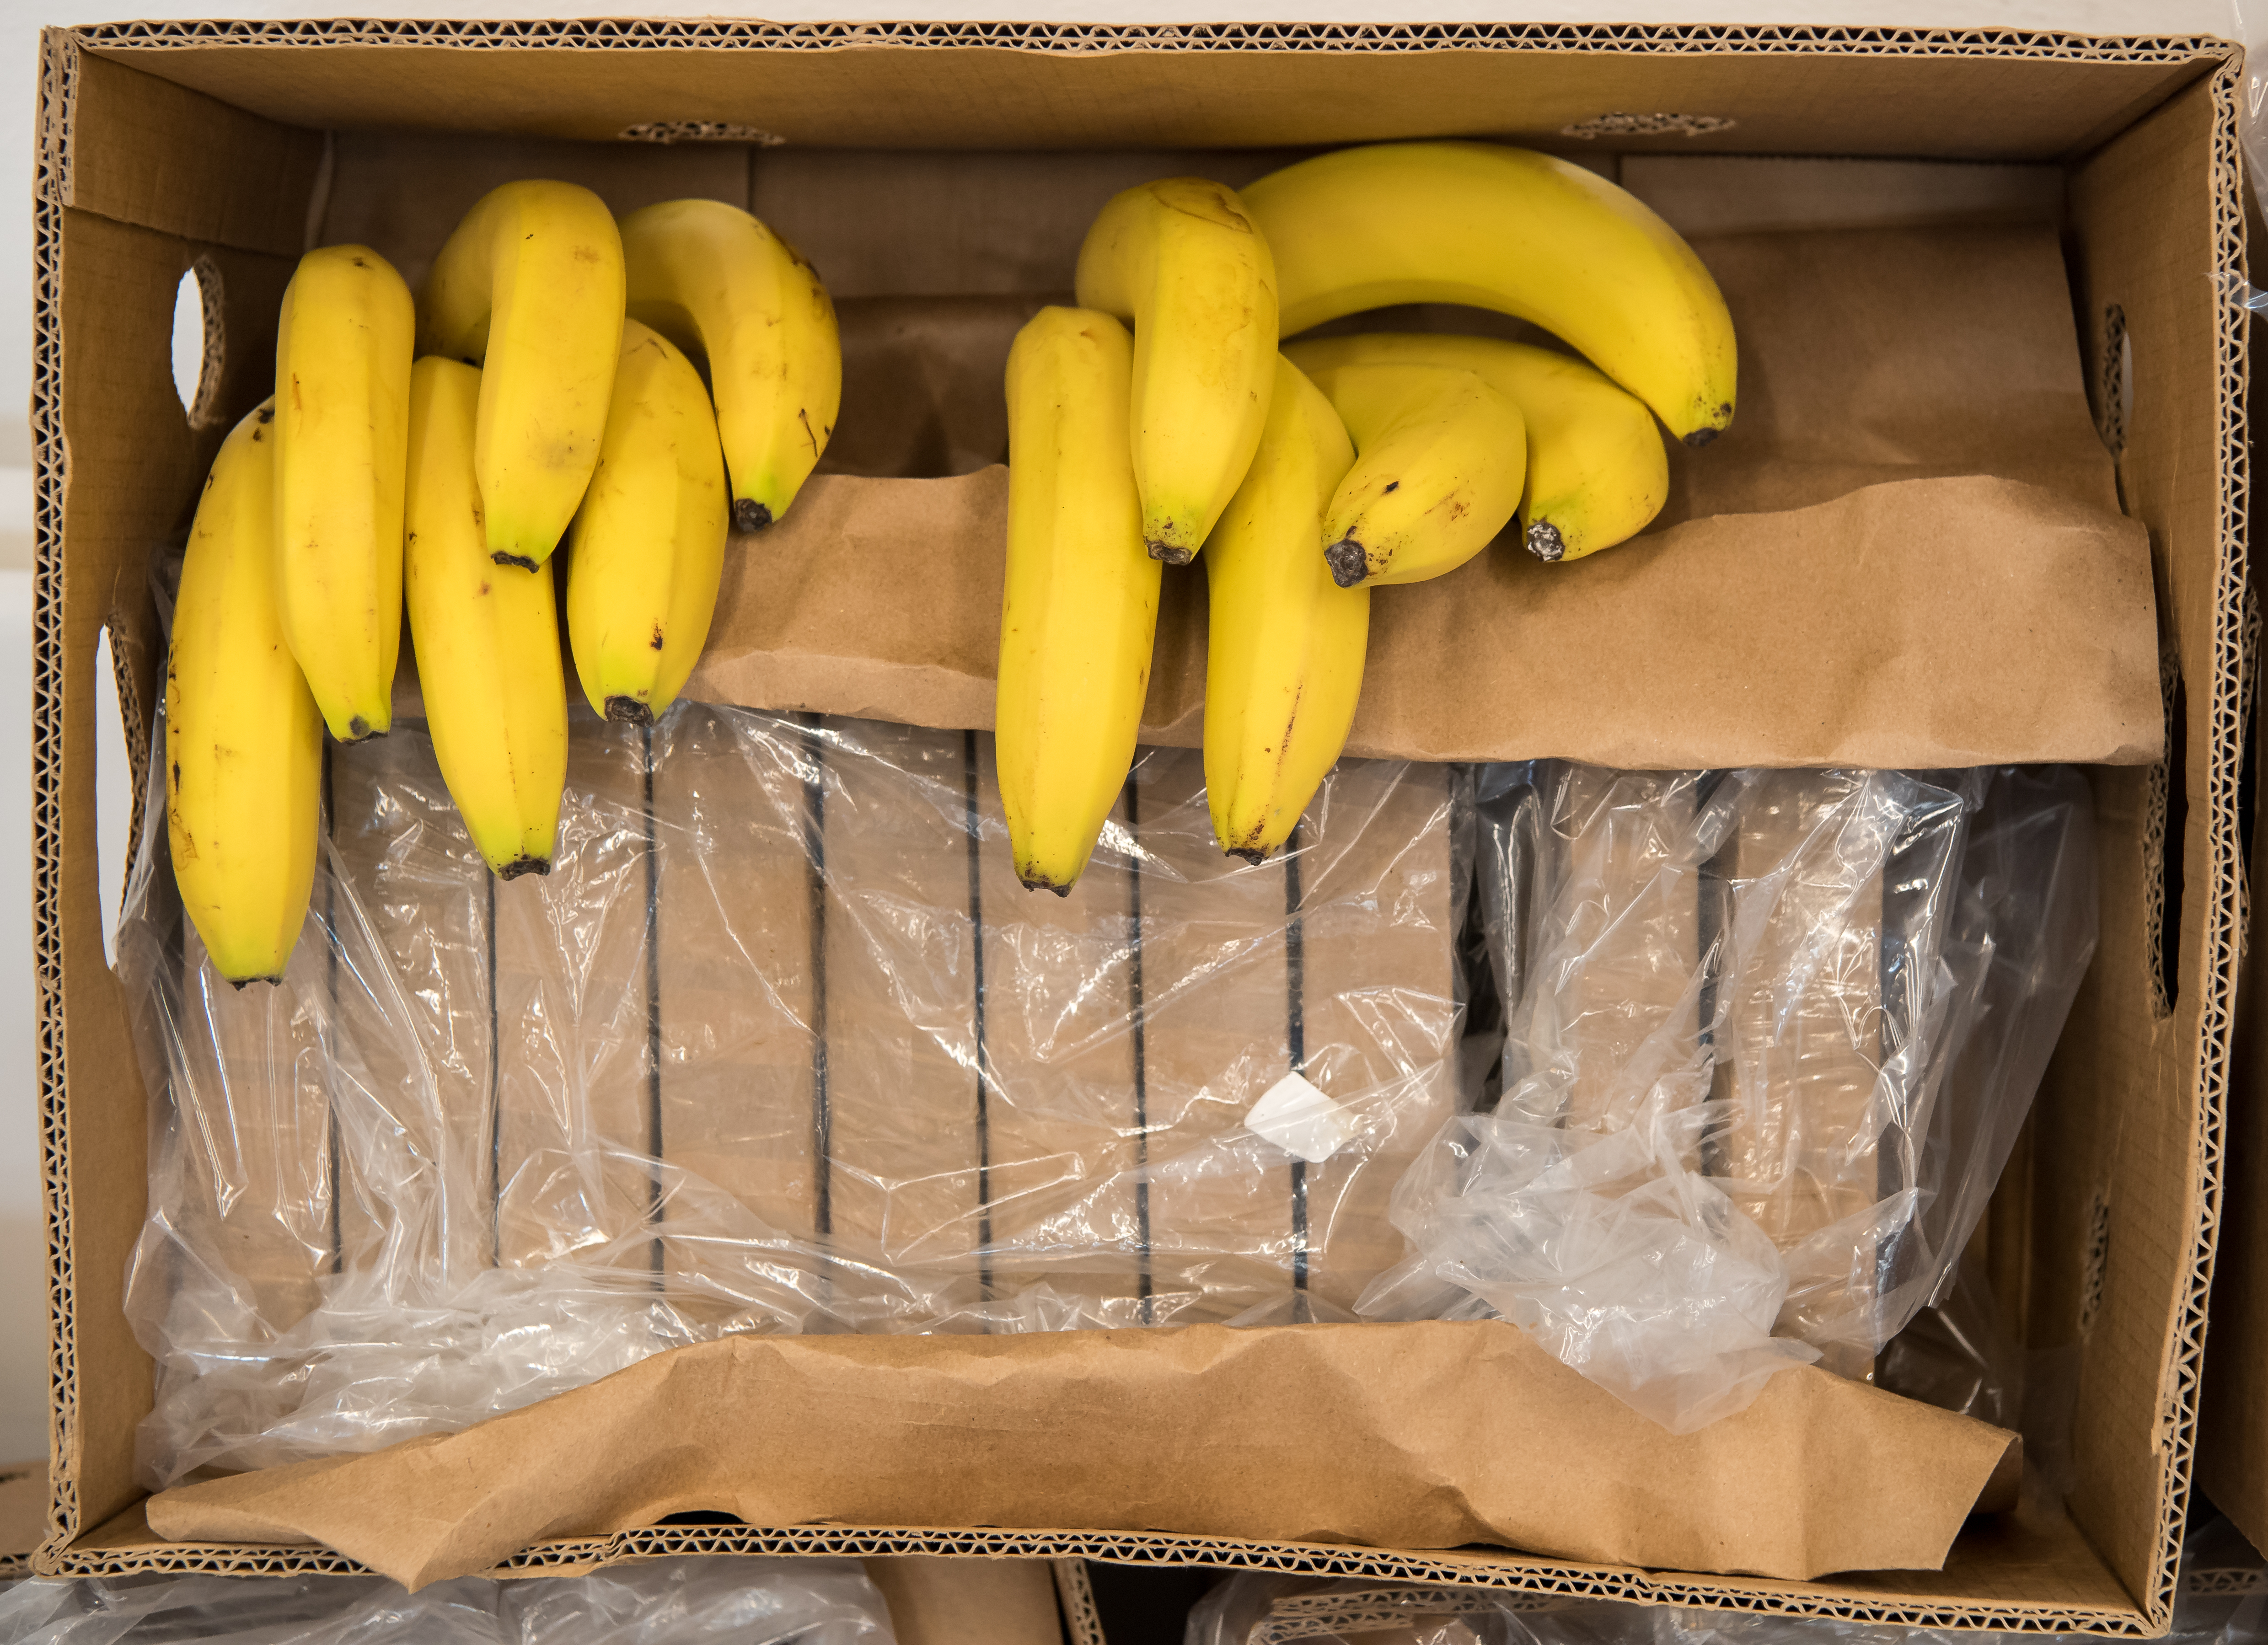 Cáscara de banano: estas propiedades medicinales